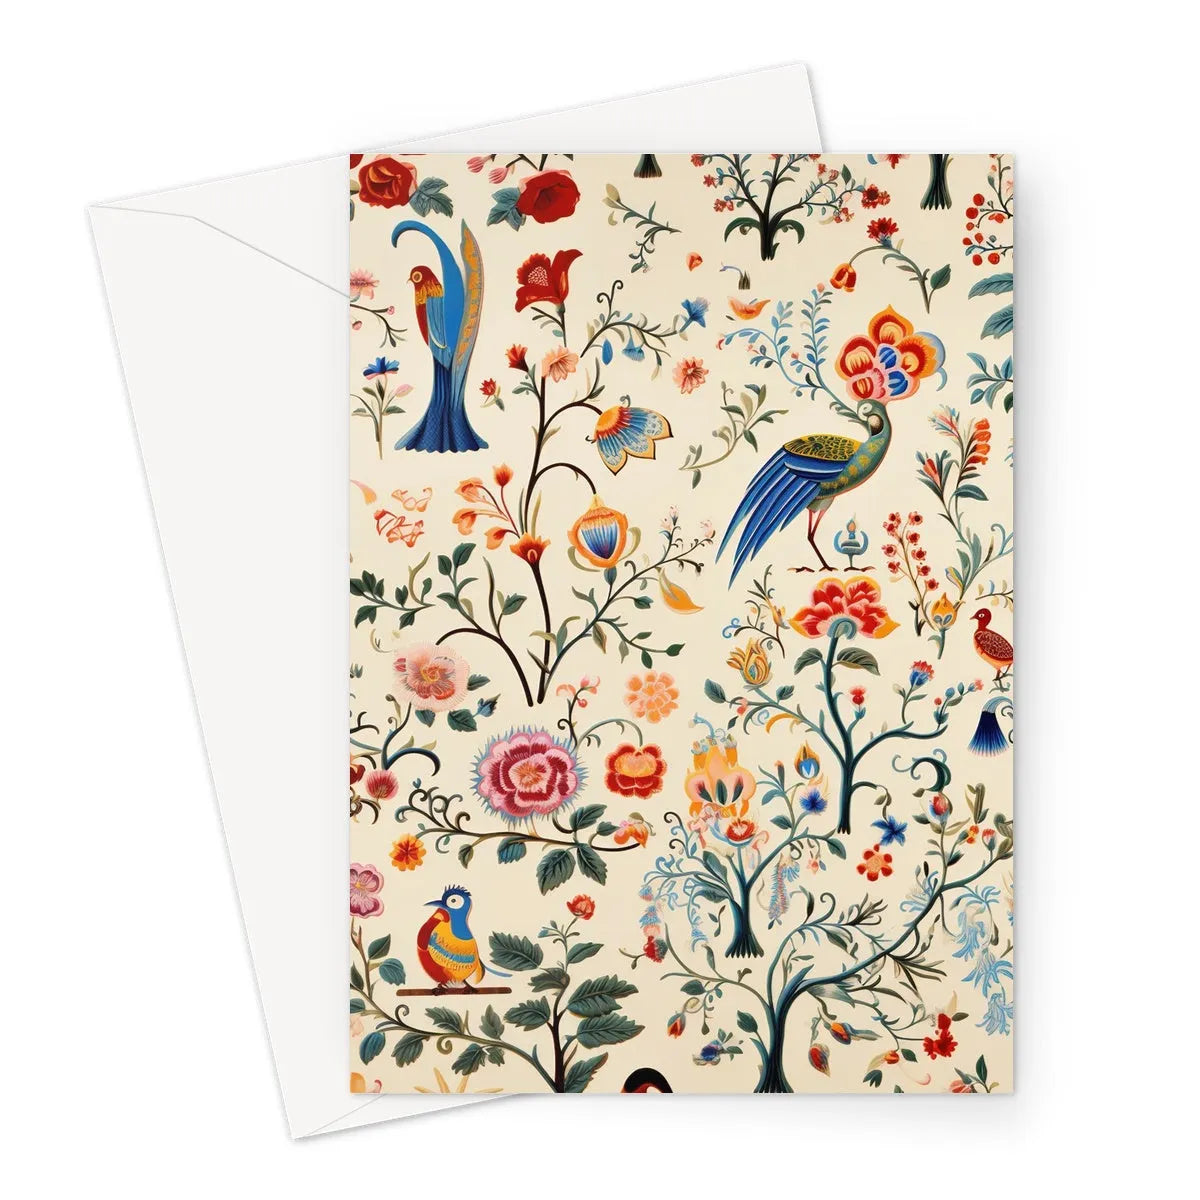 Birdwatchers Greeting Card - A5 Portrait / 1 Card - Notebooks & Notepads - Aesthetic Art